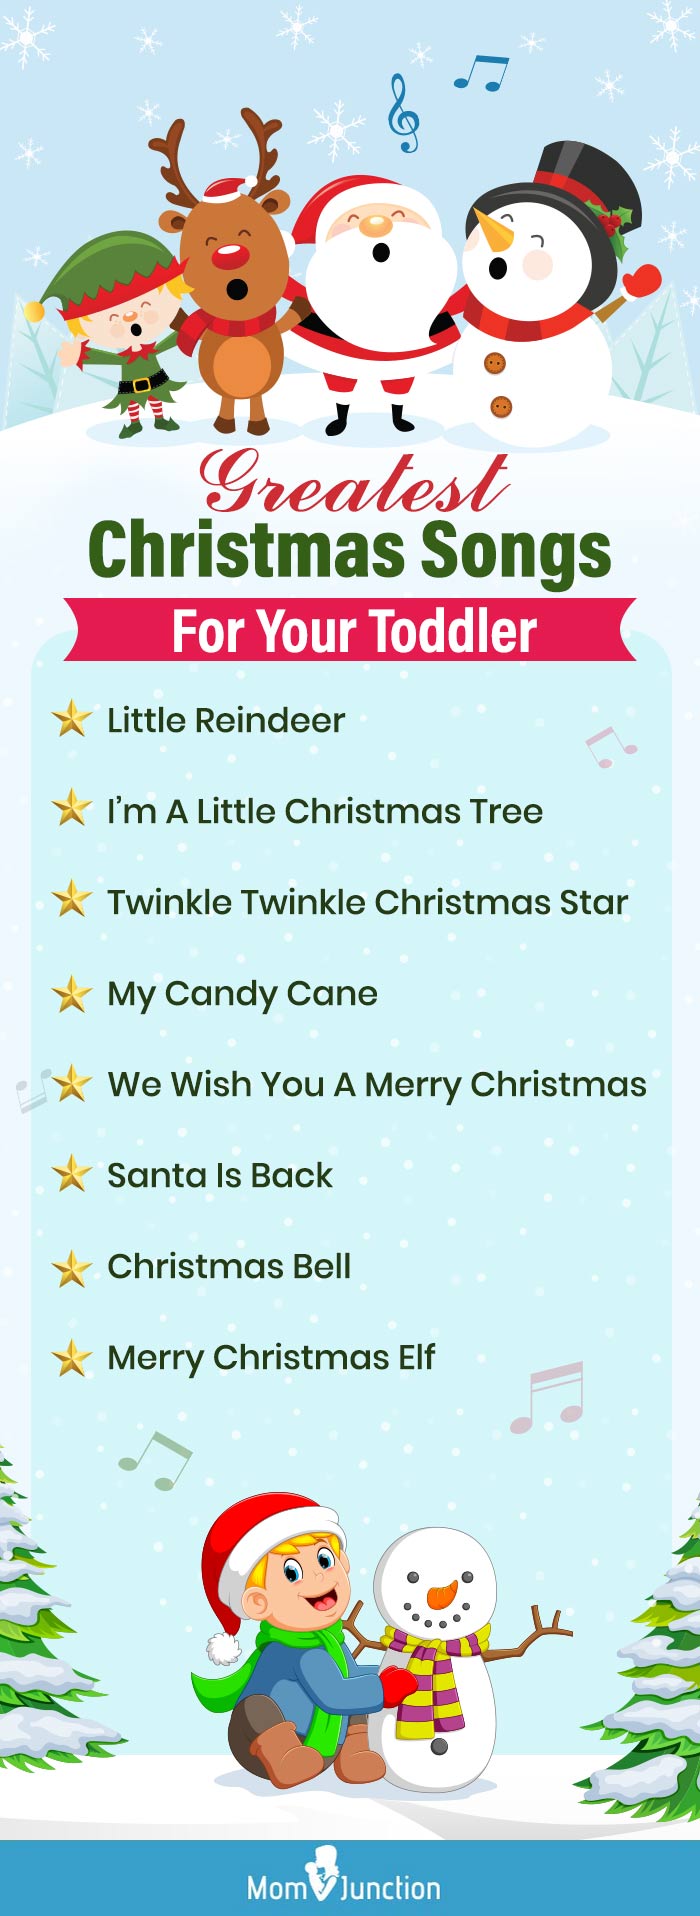 给你的孩子最好的圣诞歌曲(信息图)万博体育手机官方网站登录